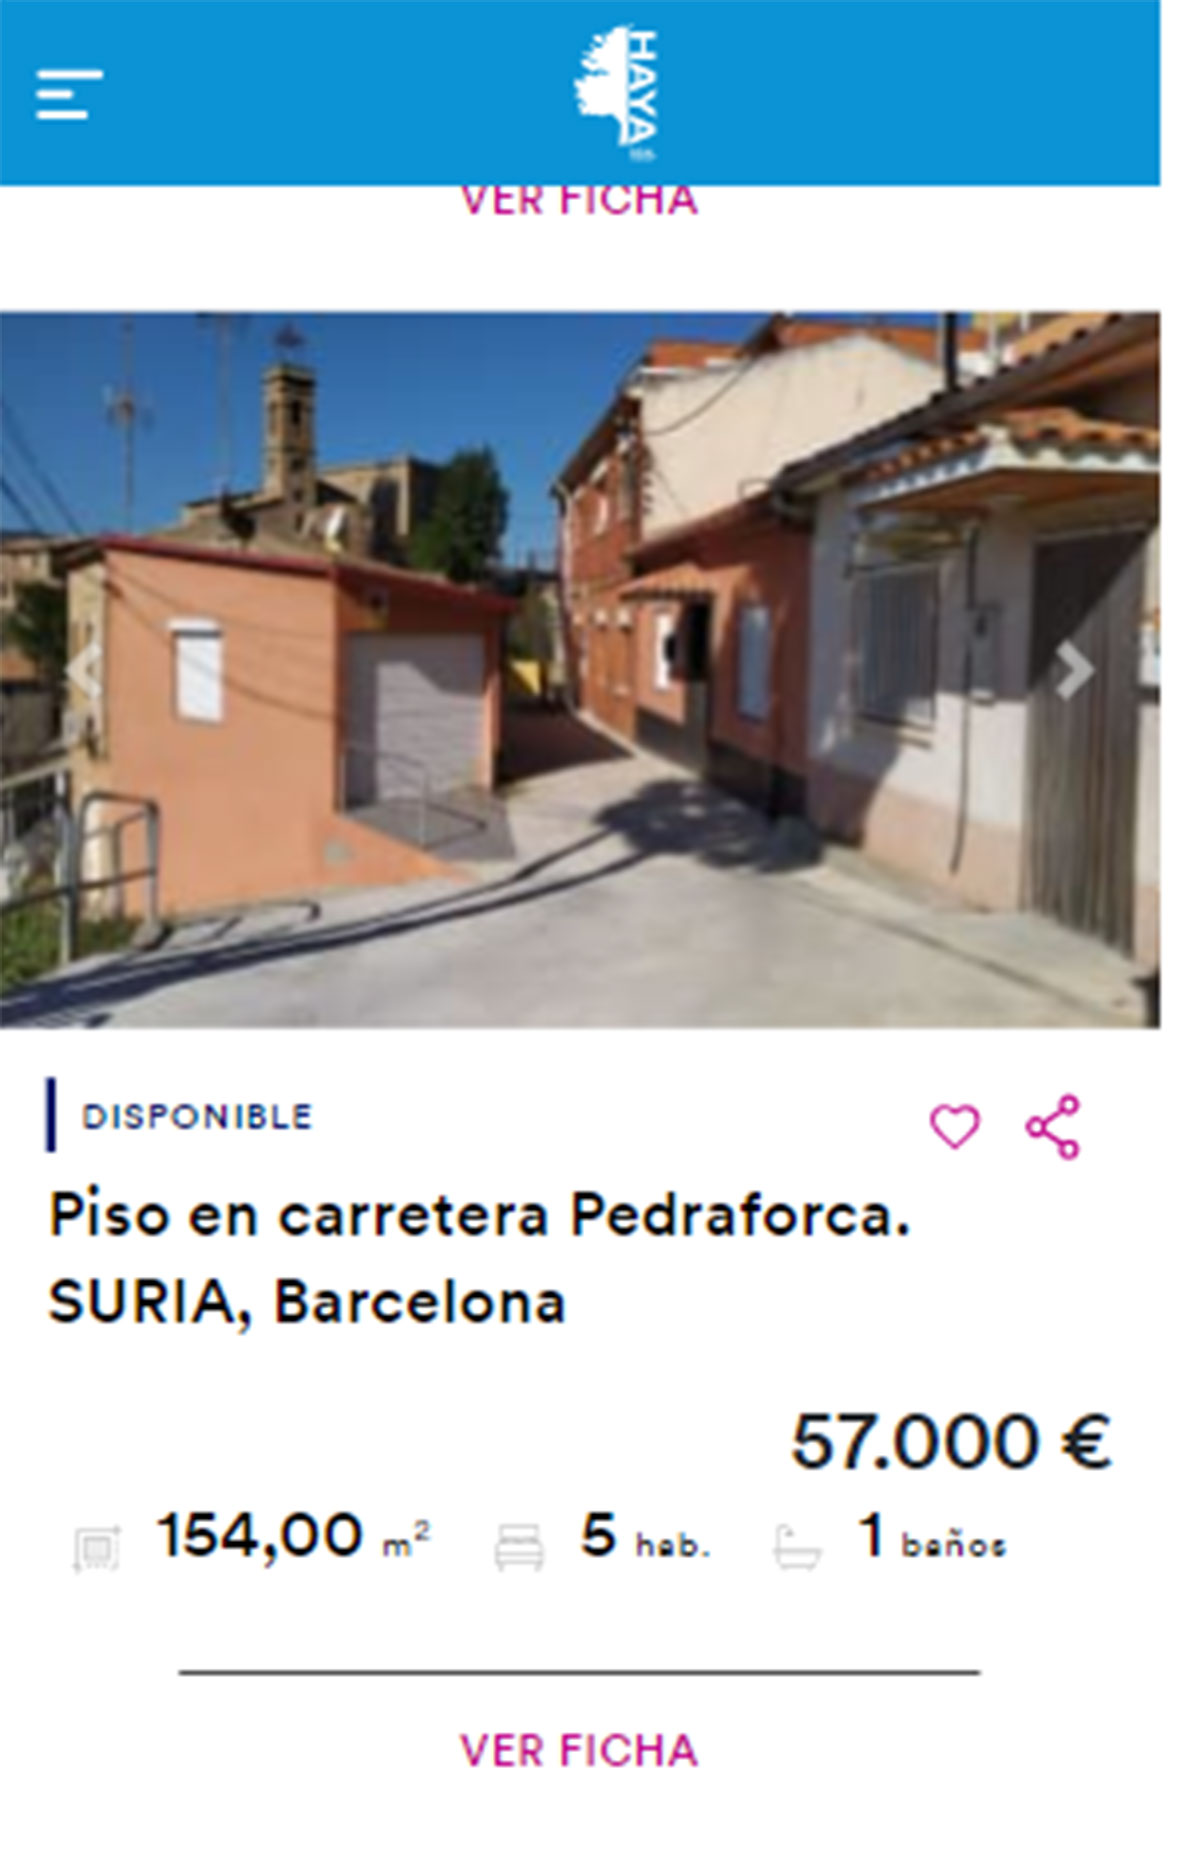 Piso en Barcelona por 57.000 euros